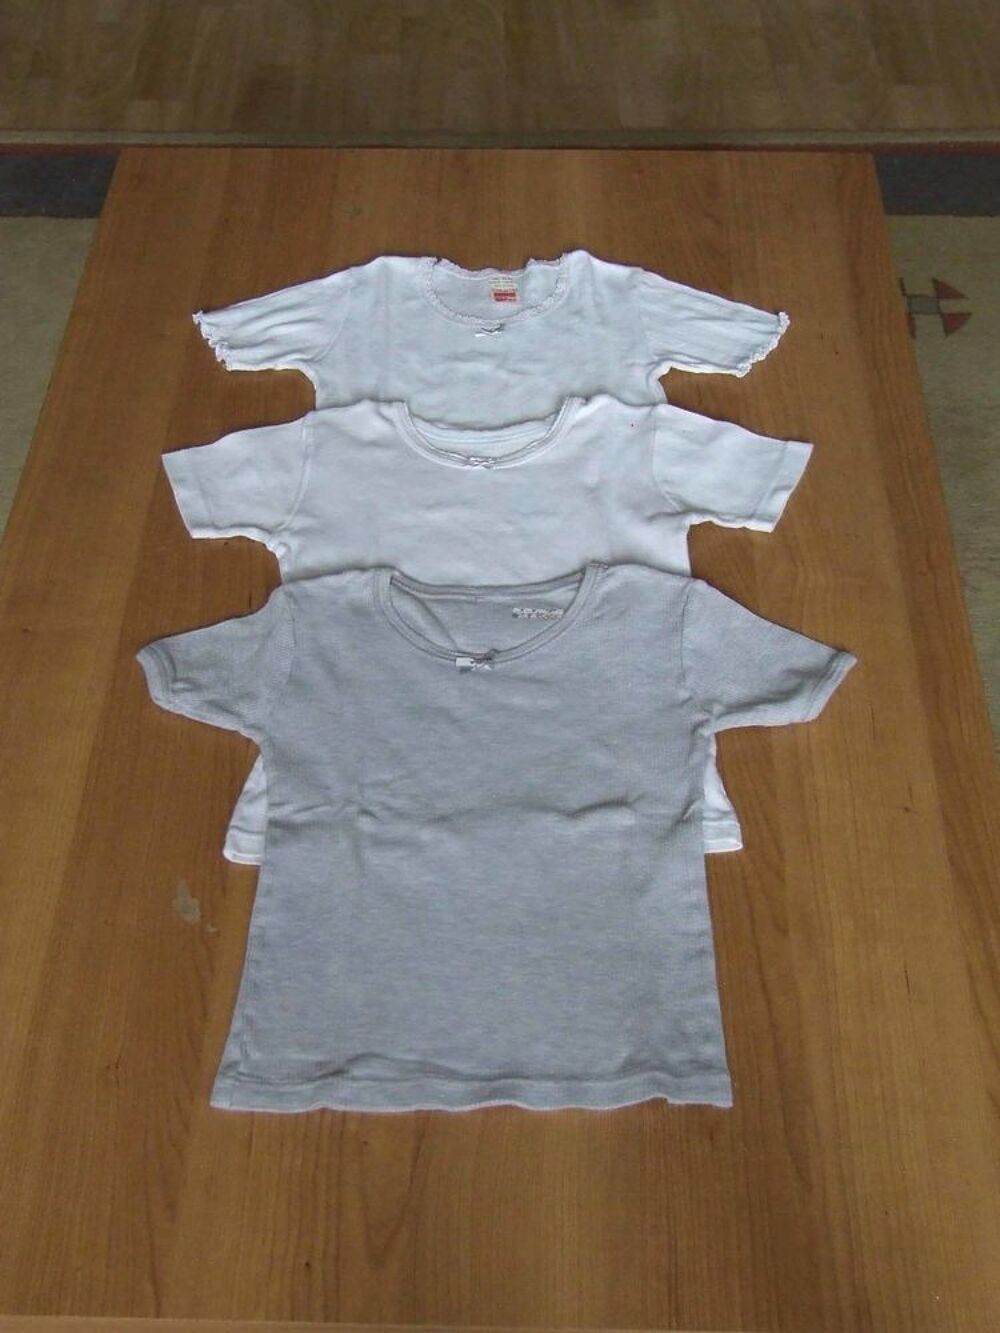 Lot 23, 3 tee-shirts manches courtes, 2 blancs 1 gris Vtements enfants